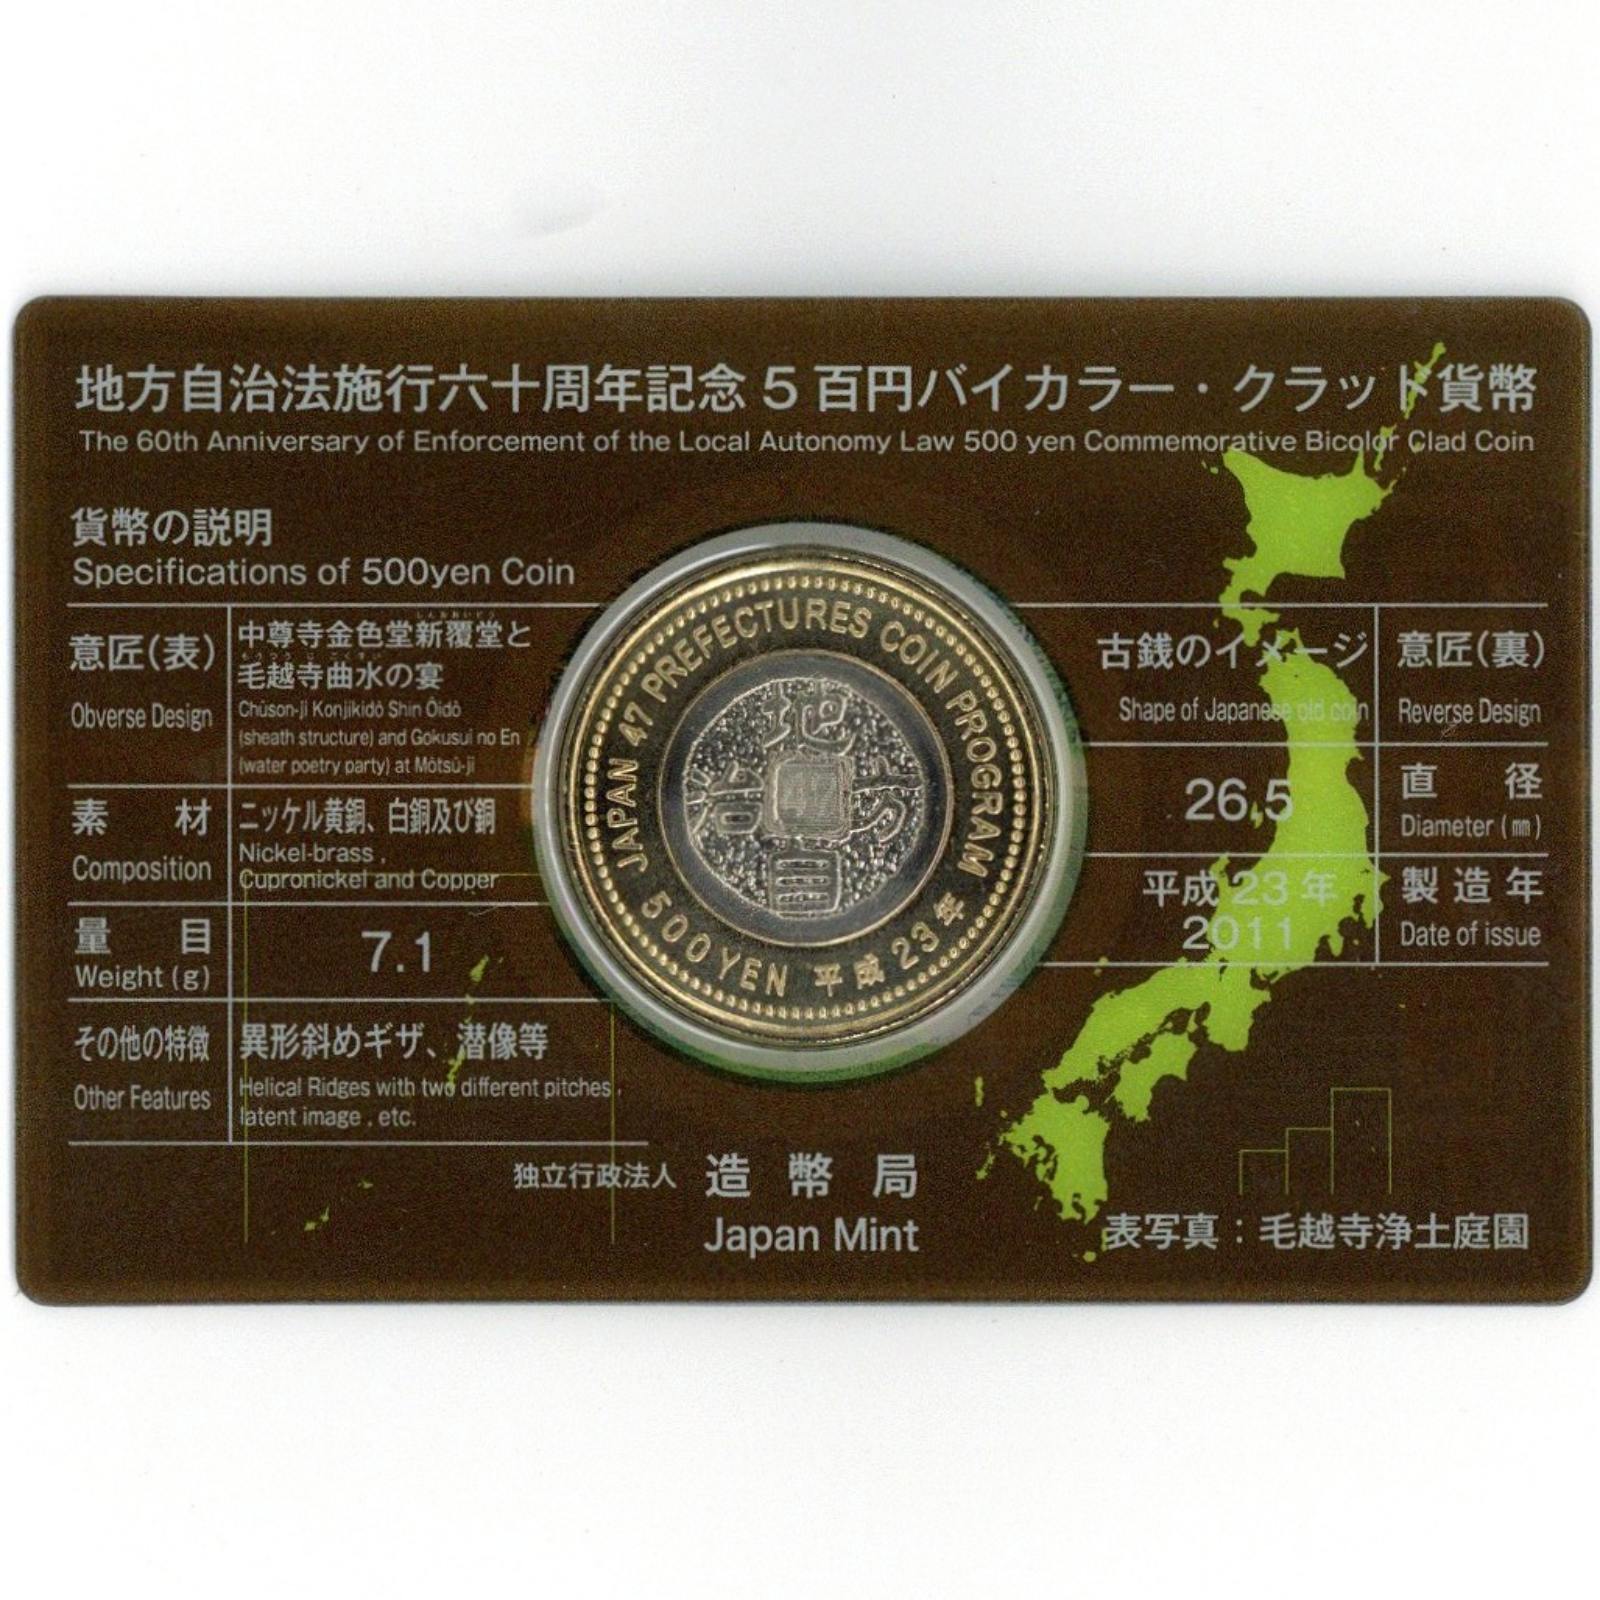 地方自治 60周年記念500円バイカラー・クラッド貨幣カード 岩手県 